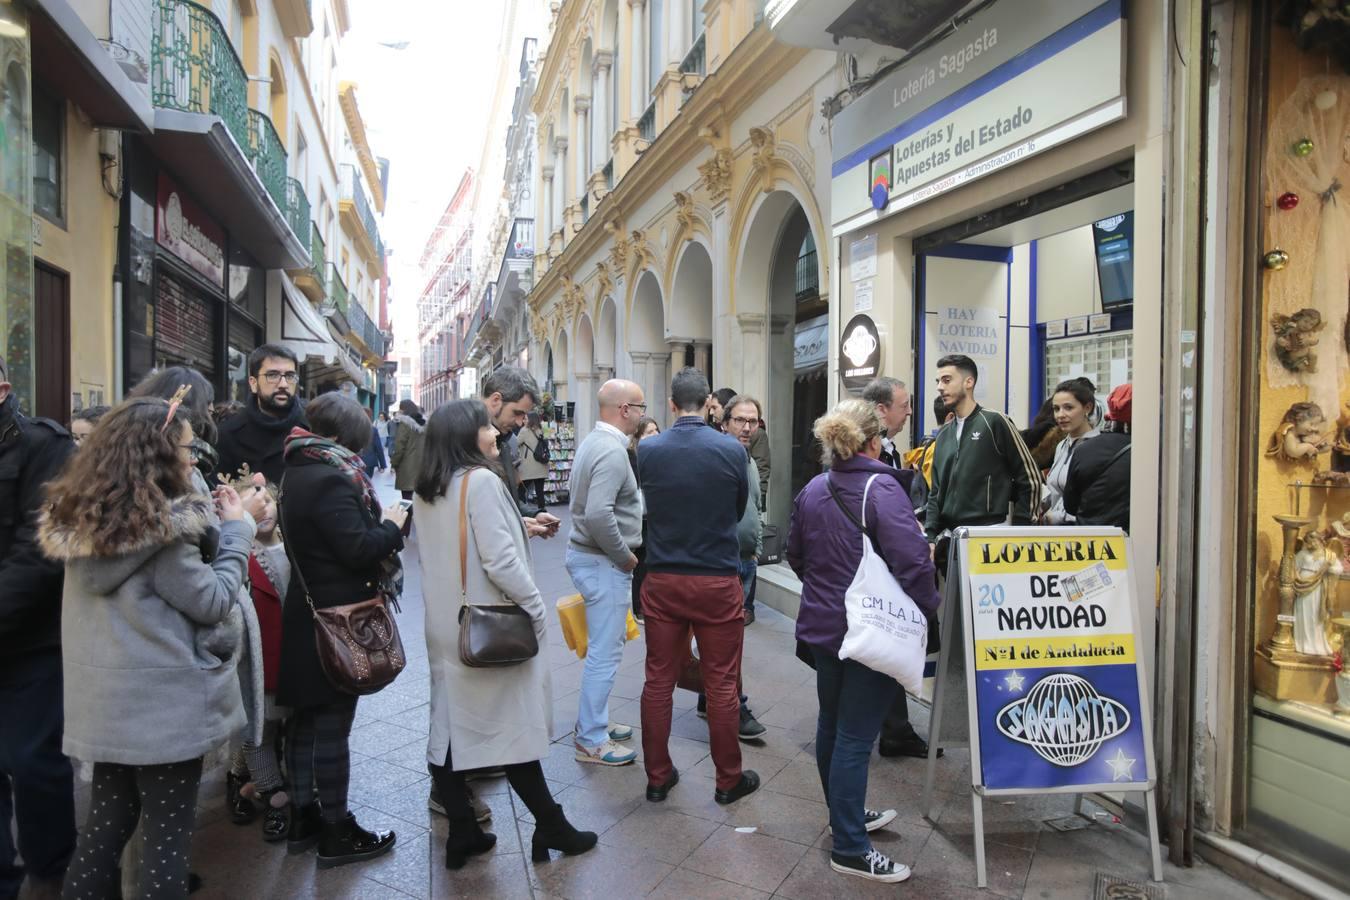 El último de los quintos premios de la Lotería de Navidad, el 02.308, toca en el Gato Negro y otros puntos de Sevilla